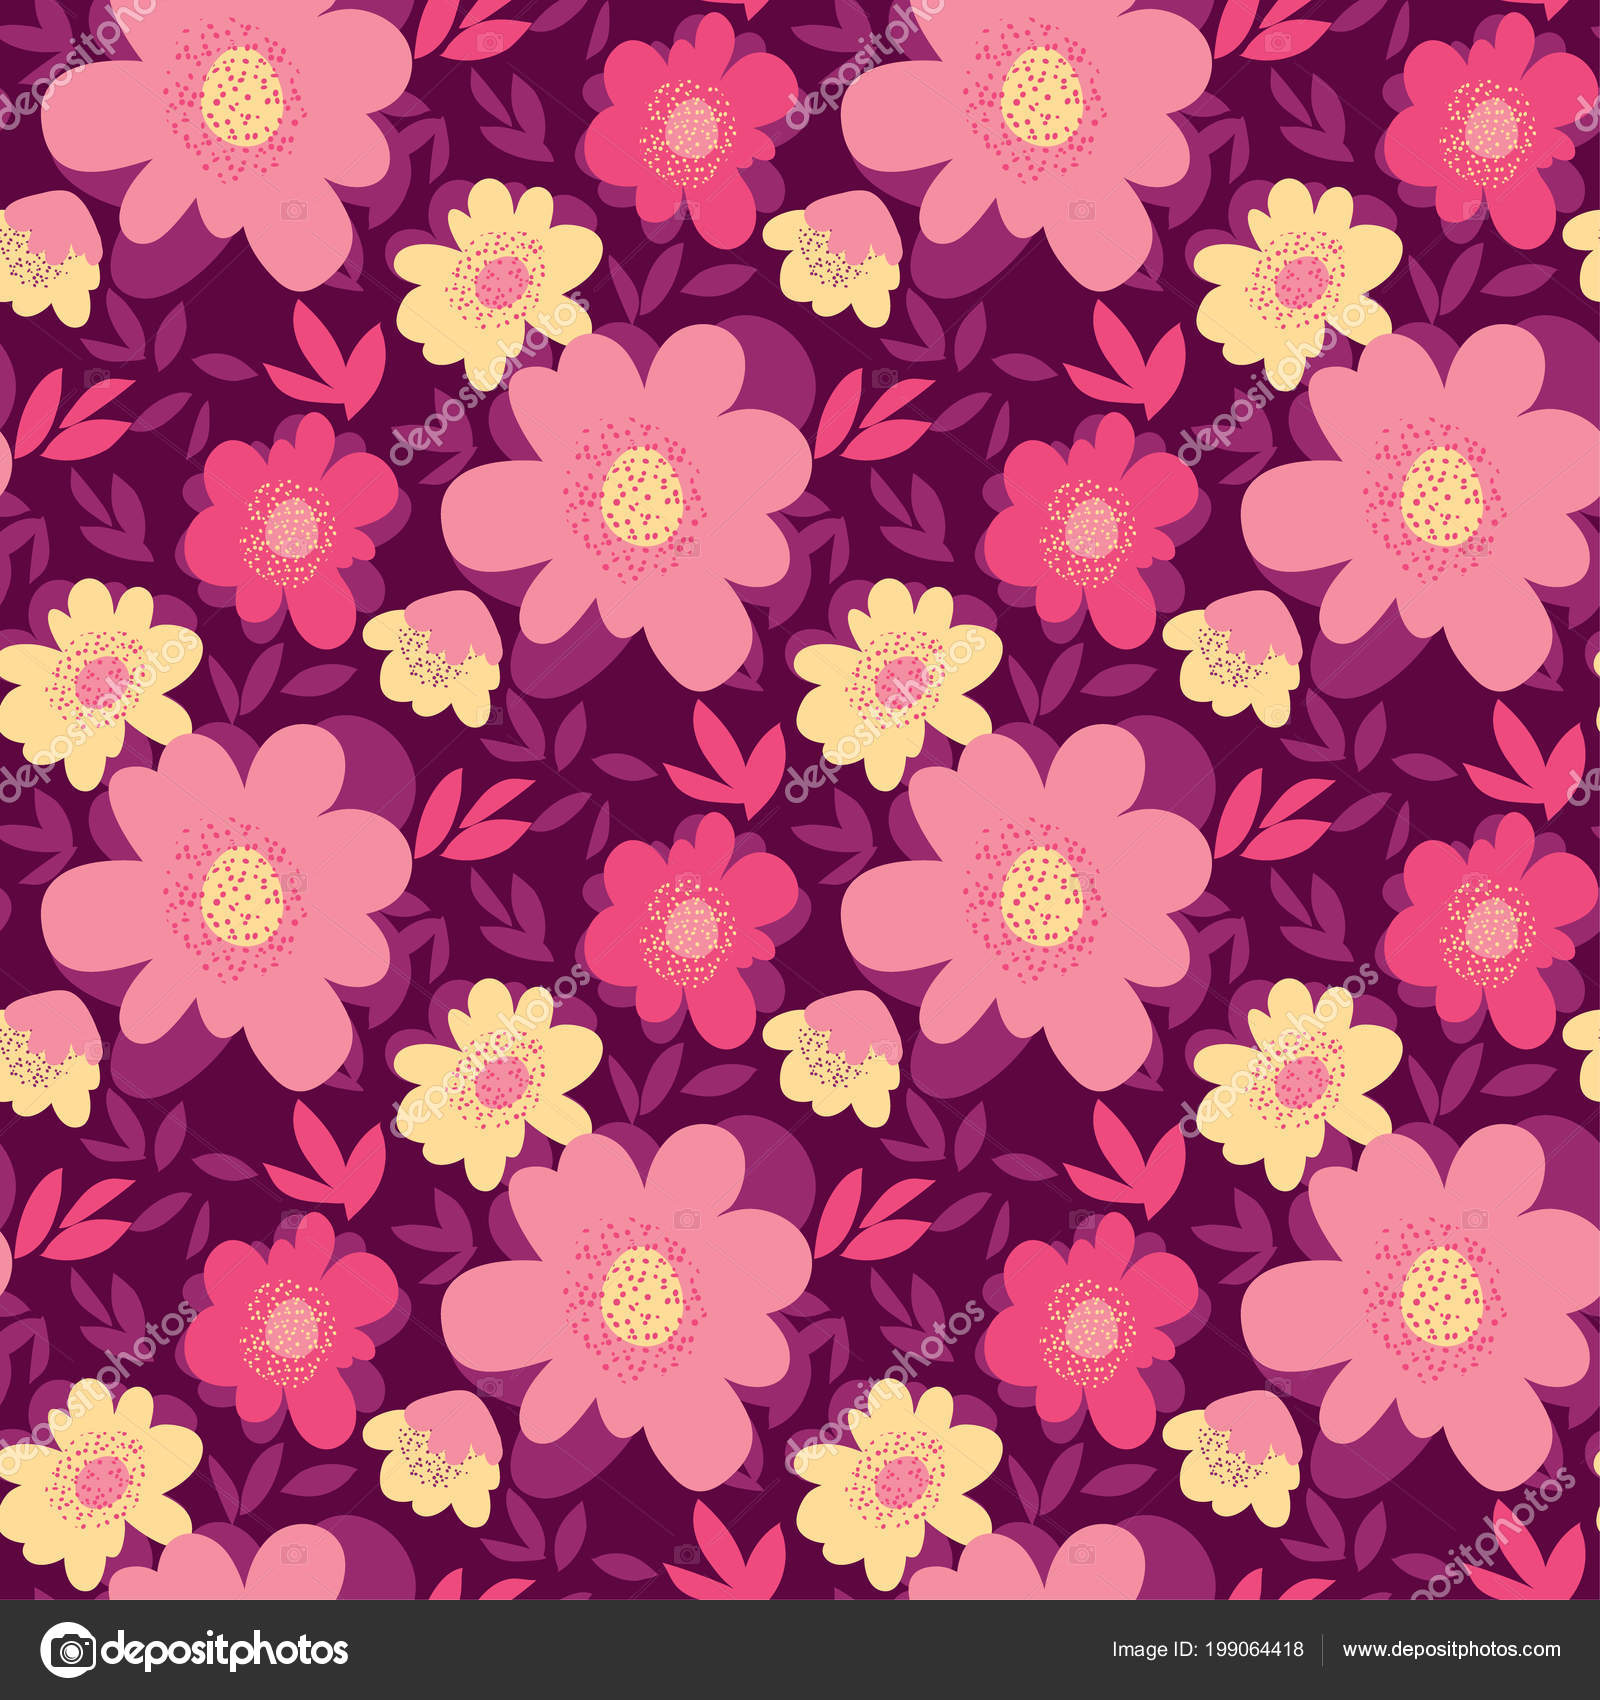 Pink Floral Paper Vector Background Stock Illustration - Download